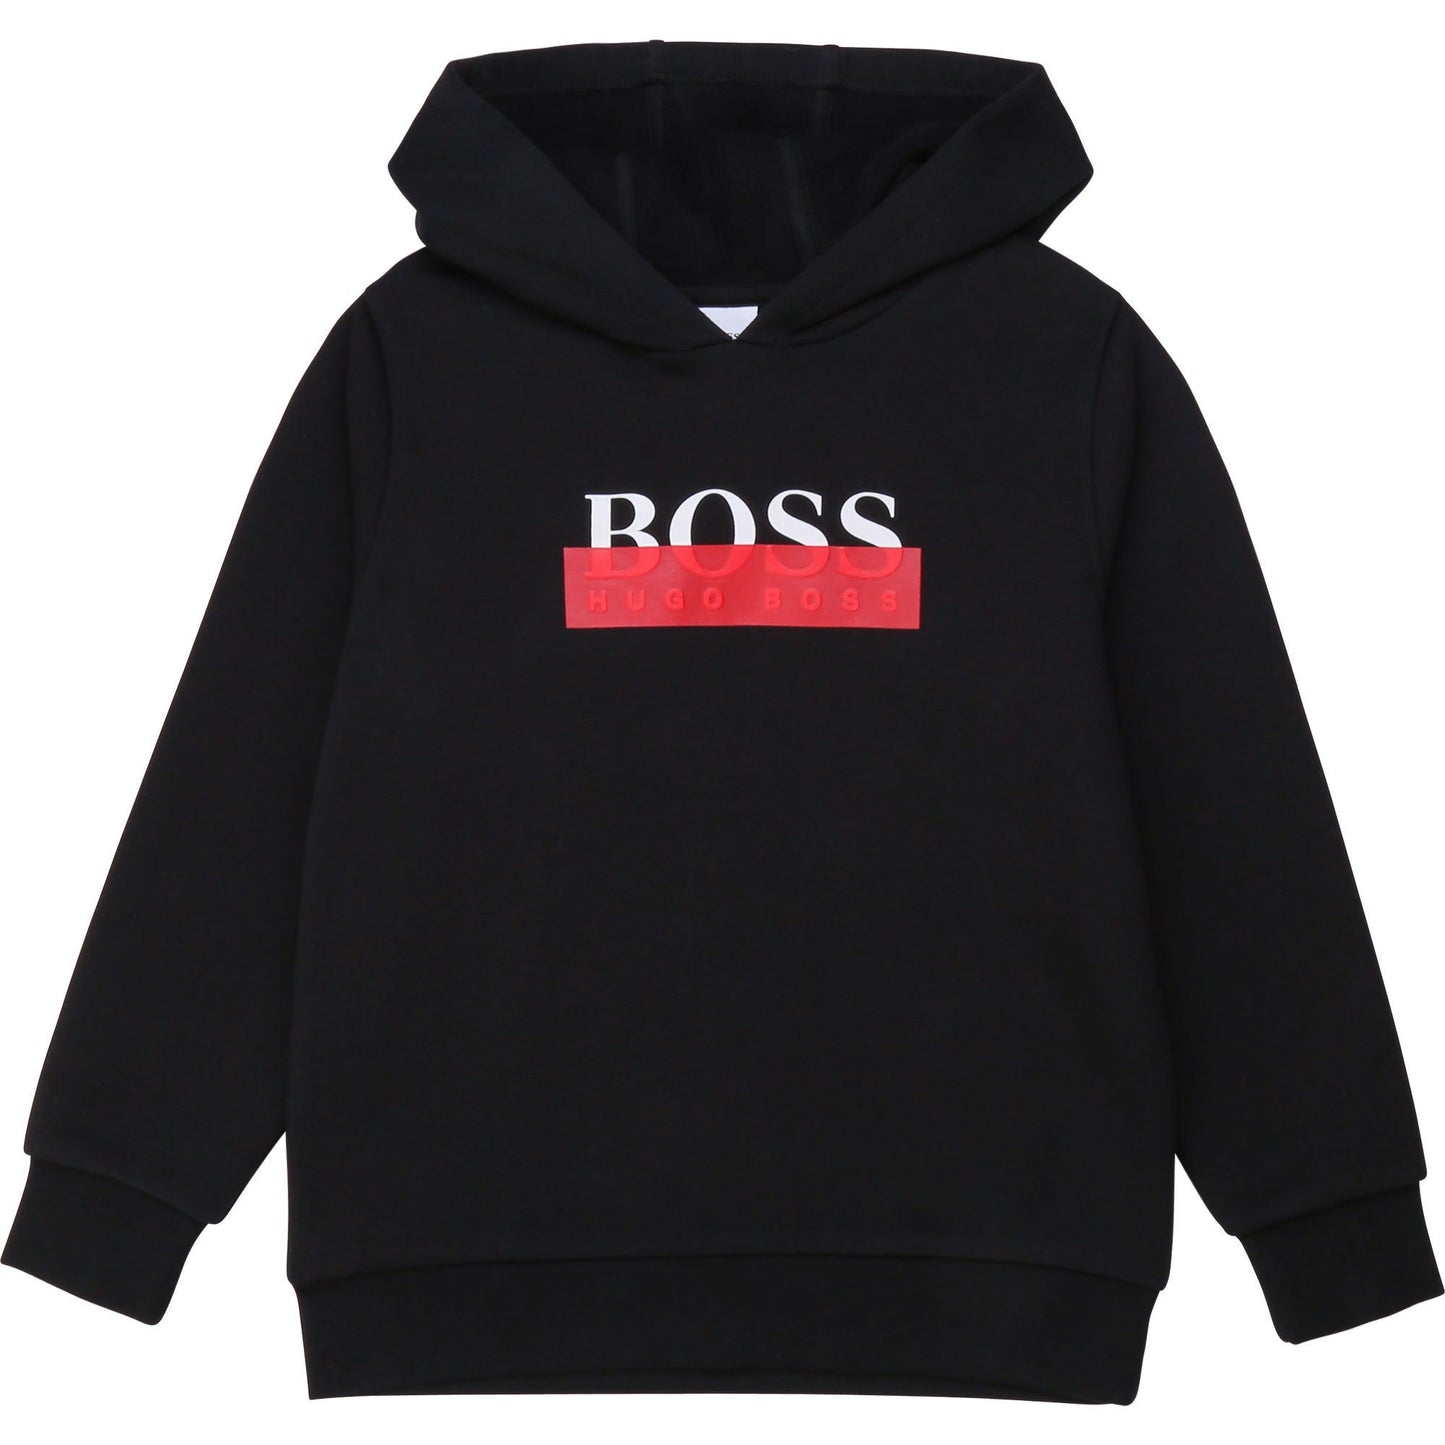 Hugo Boss Boys Black Hooded Sweatshirt Sweatshirts and Sweatpants Hugo Boss 